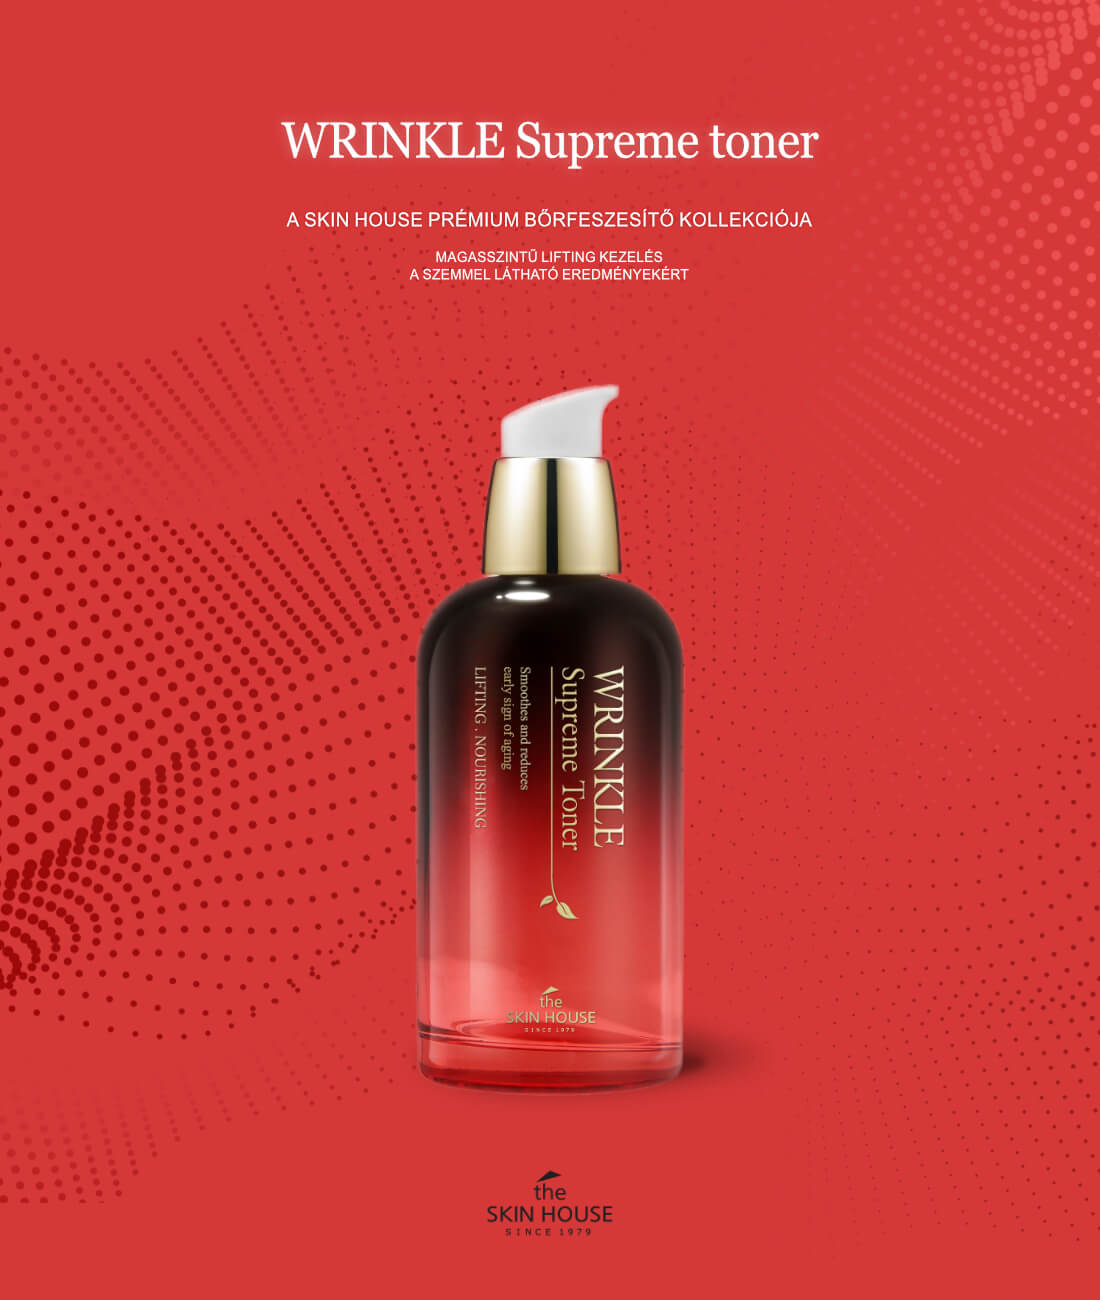 theskinhouse-wrinkle-supreme-borfeszesito-toner-01